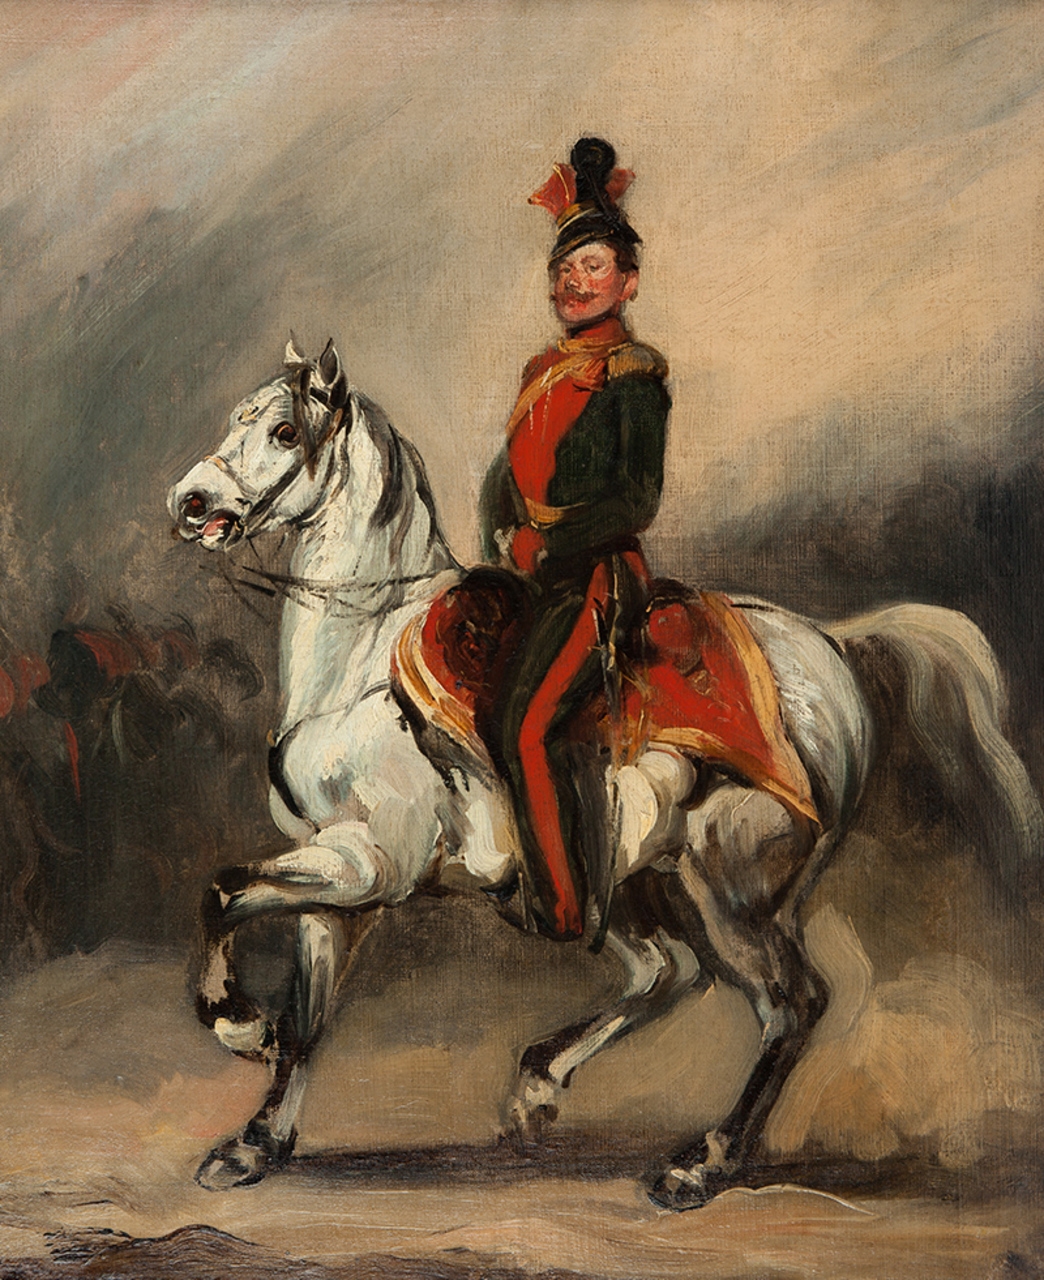 Huzar austriacki na koniu (Eustachy Dunin-Wąsowicz) by Piotr Michałowski, 1840